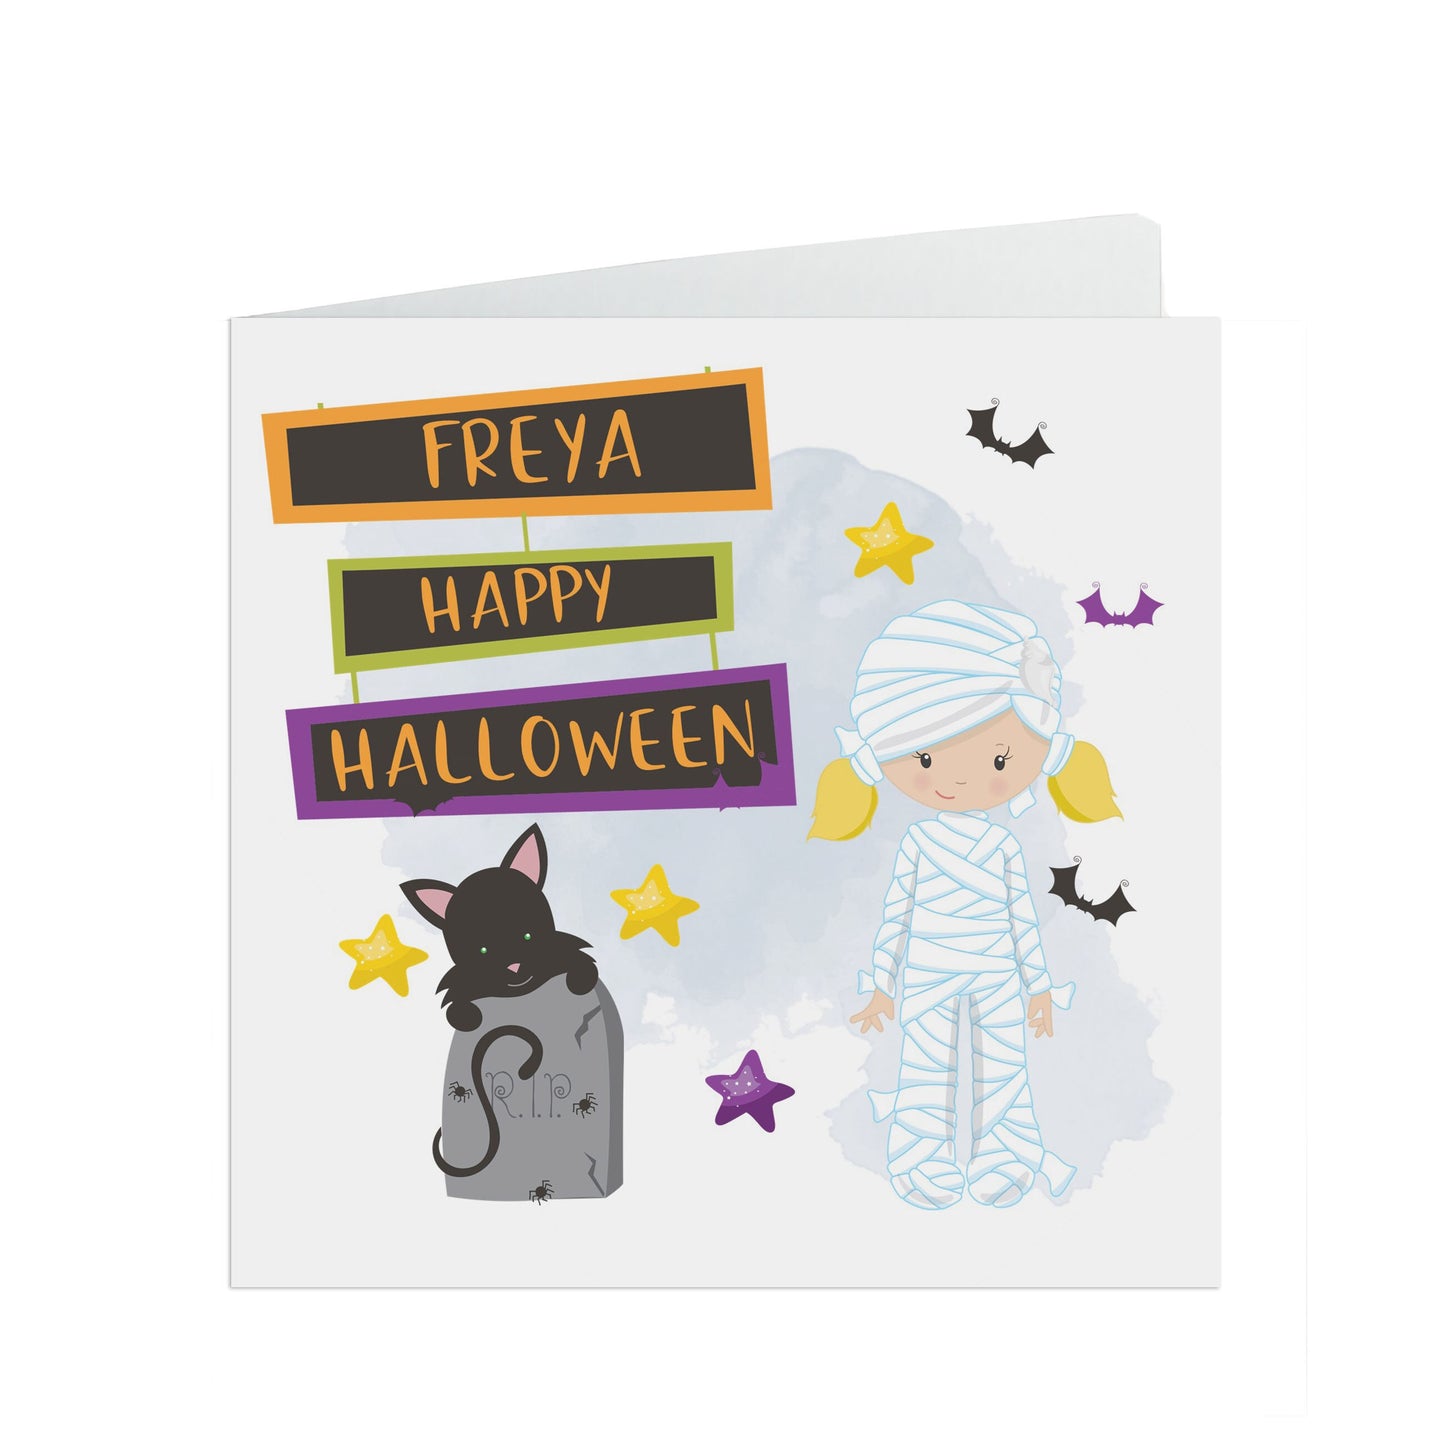 Personalised Halloween card, Cute mummy card with kraft brown envelope